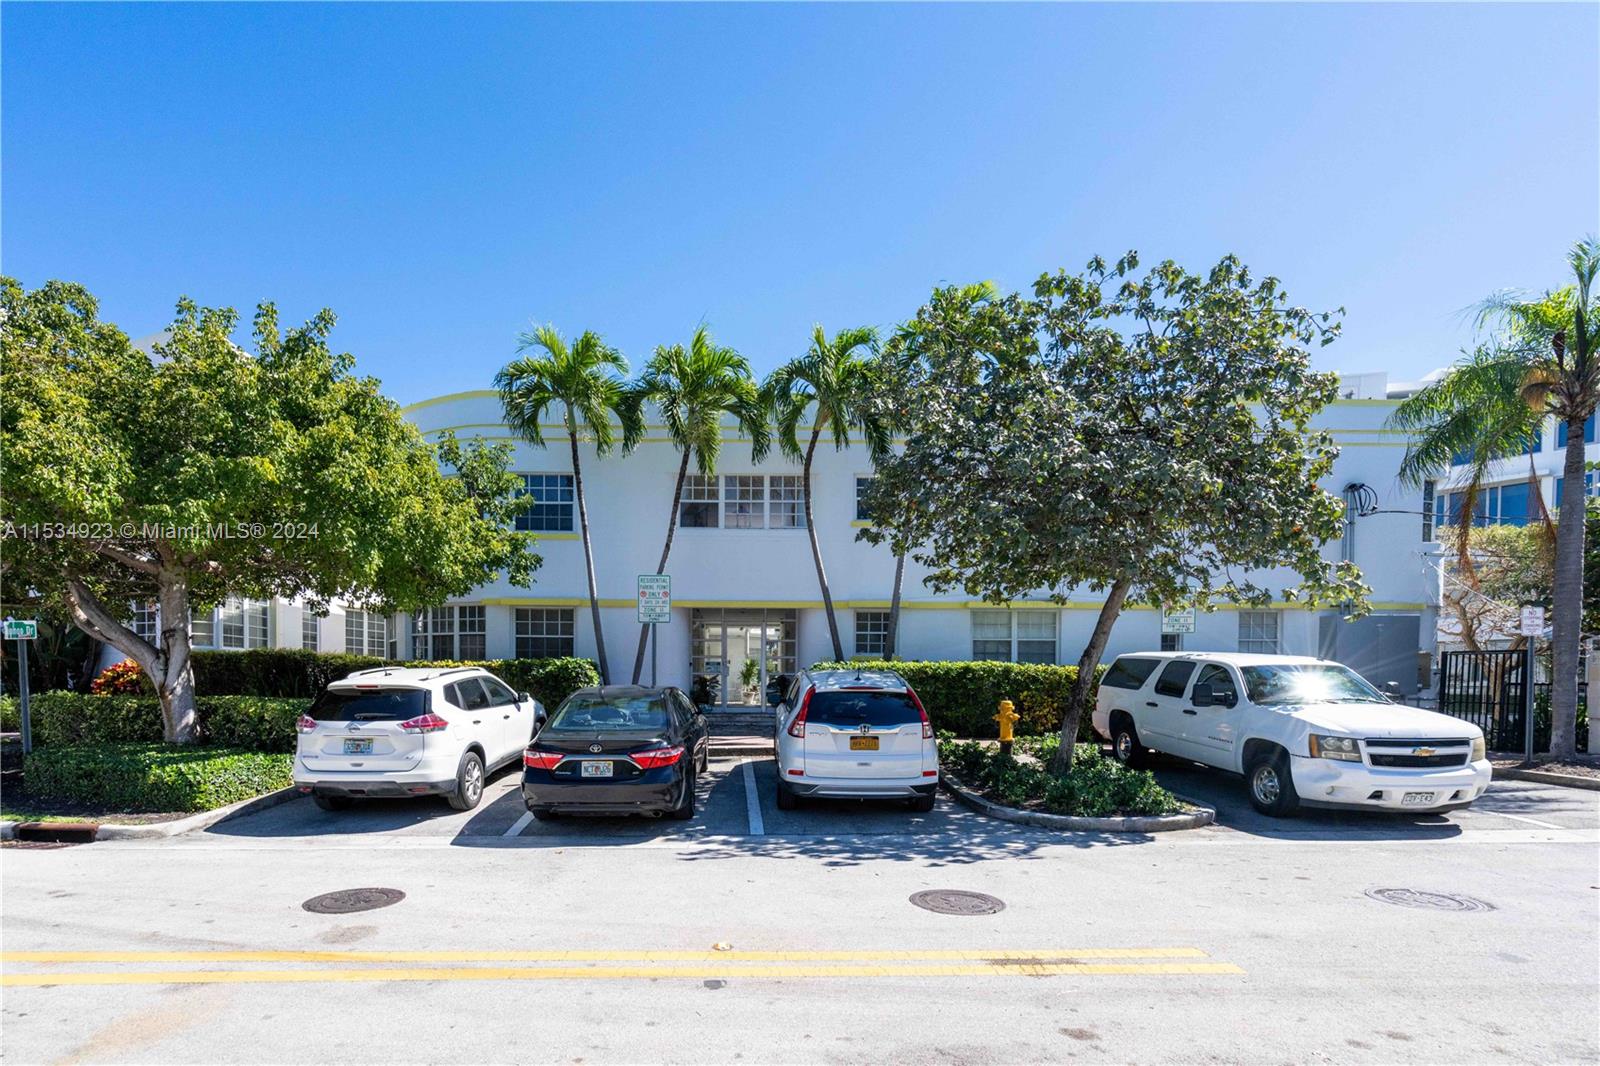 Rental Property at 2383 Flamingo Dr 11, Miami Beach, Miami-Dade County, Florida - Bedrooms: 3 
Bathrooms: 2  - $3,500 MO.